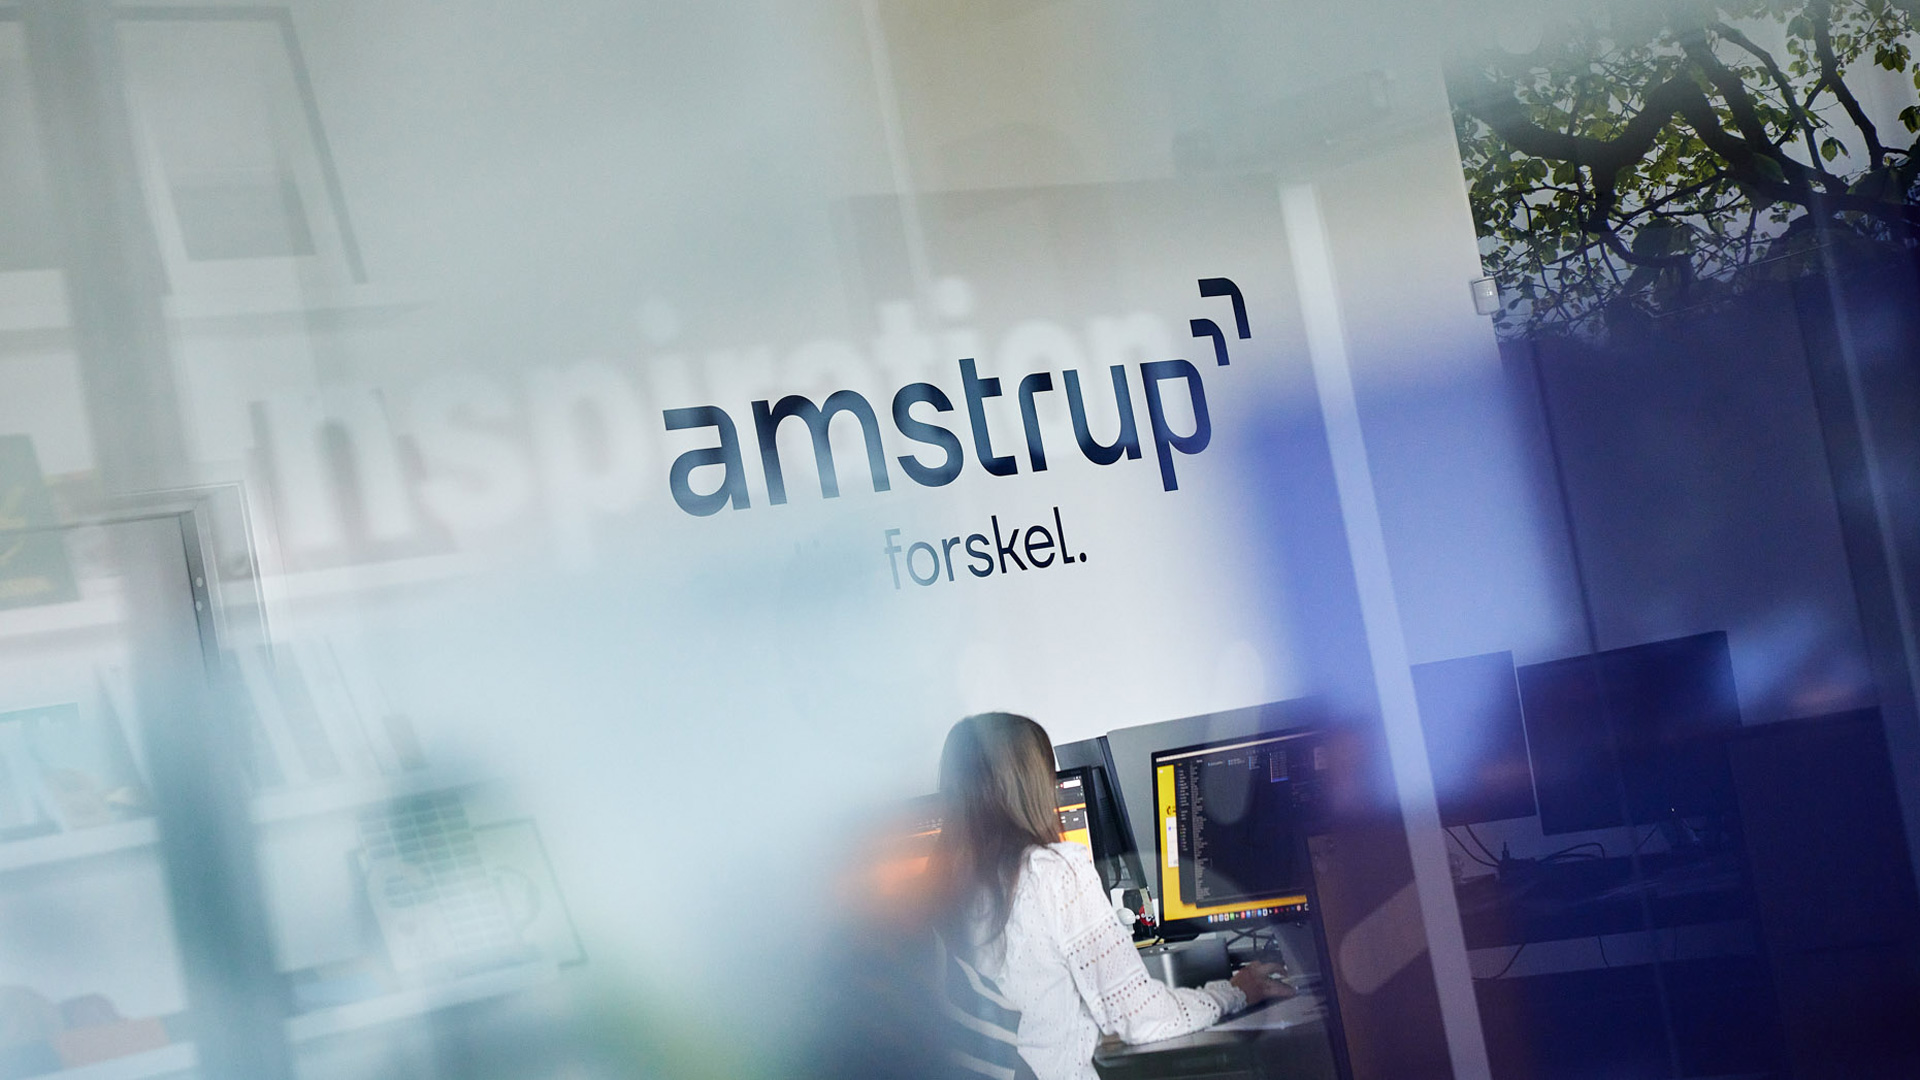 Amstrup er en virksomhed med stærke værdier og fokus på faglighed